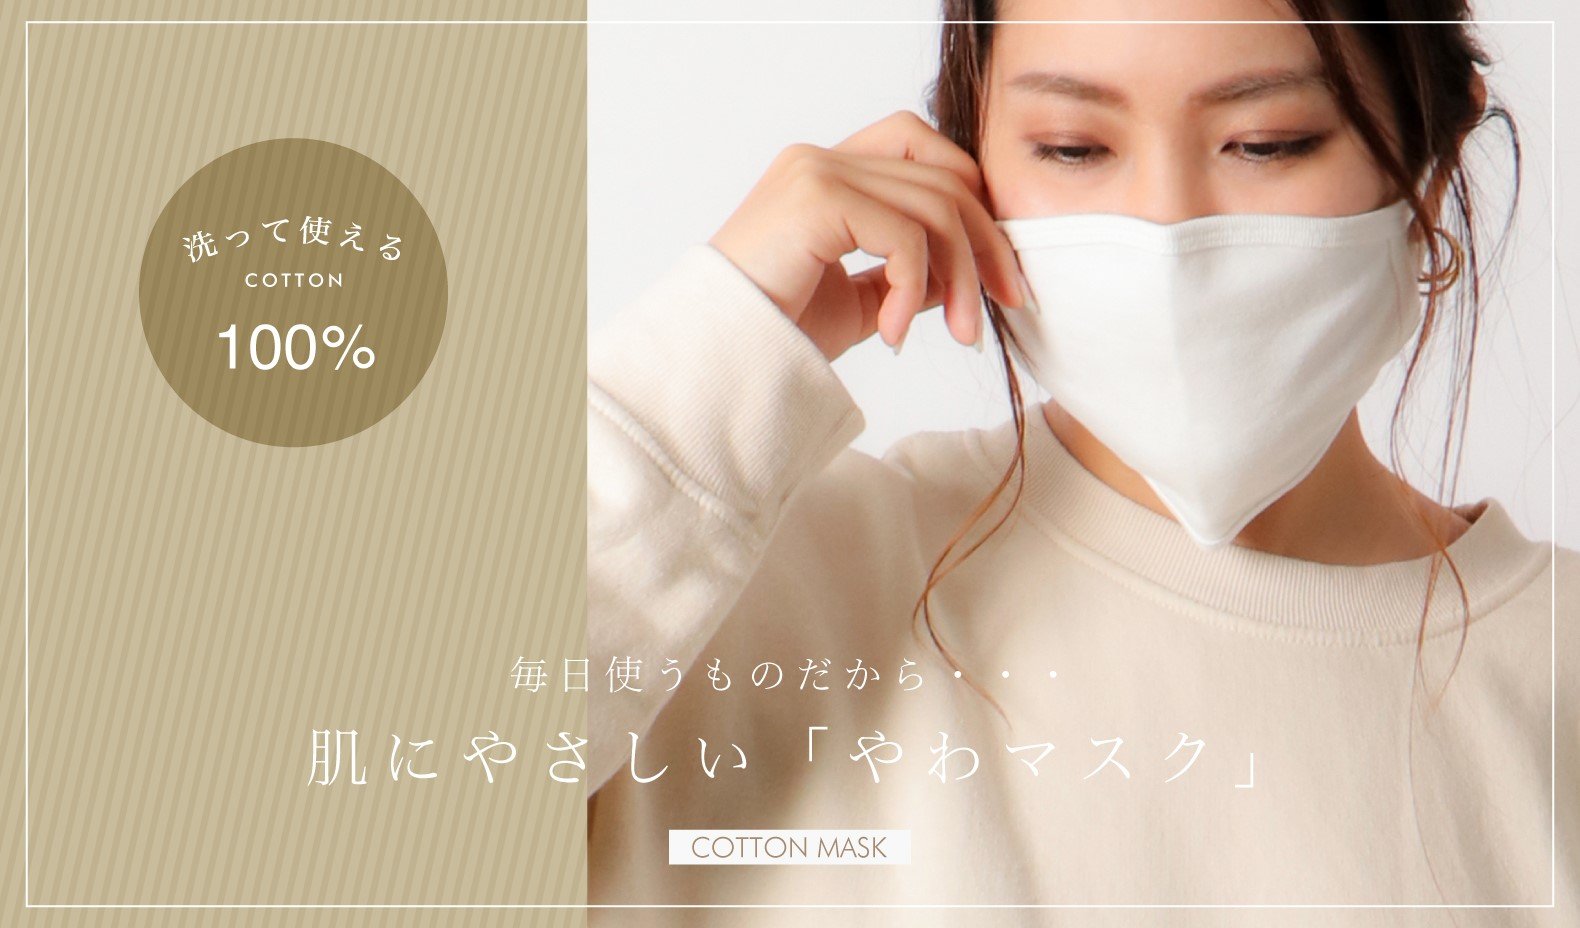 イオングループのコックス 洗える布マスク やわマスク を発売 4月下旬から発送 Itmedia ビジネスオンライン